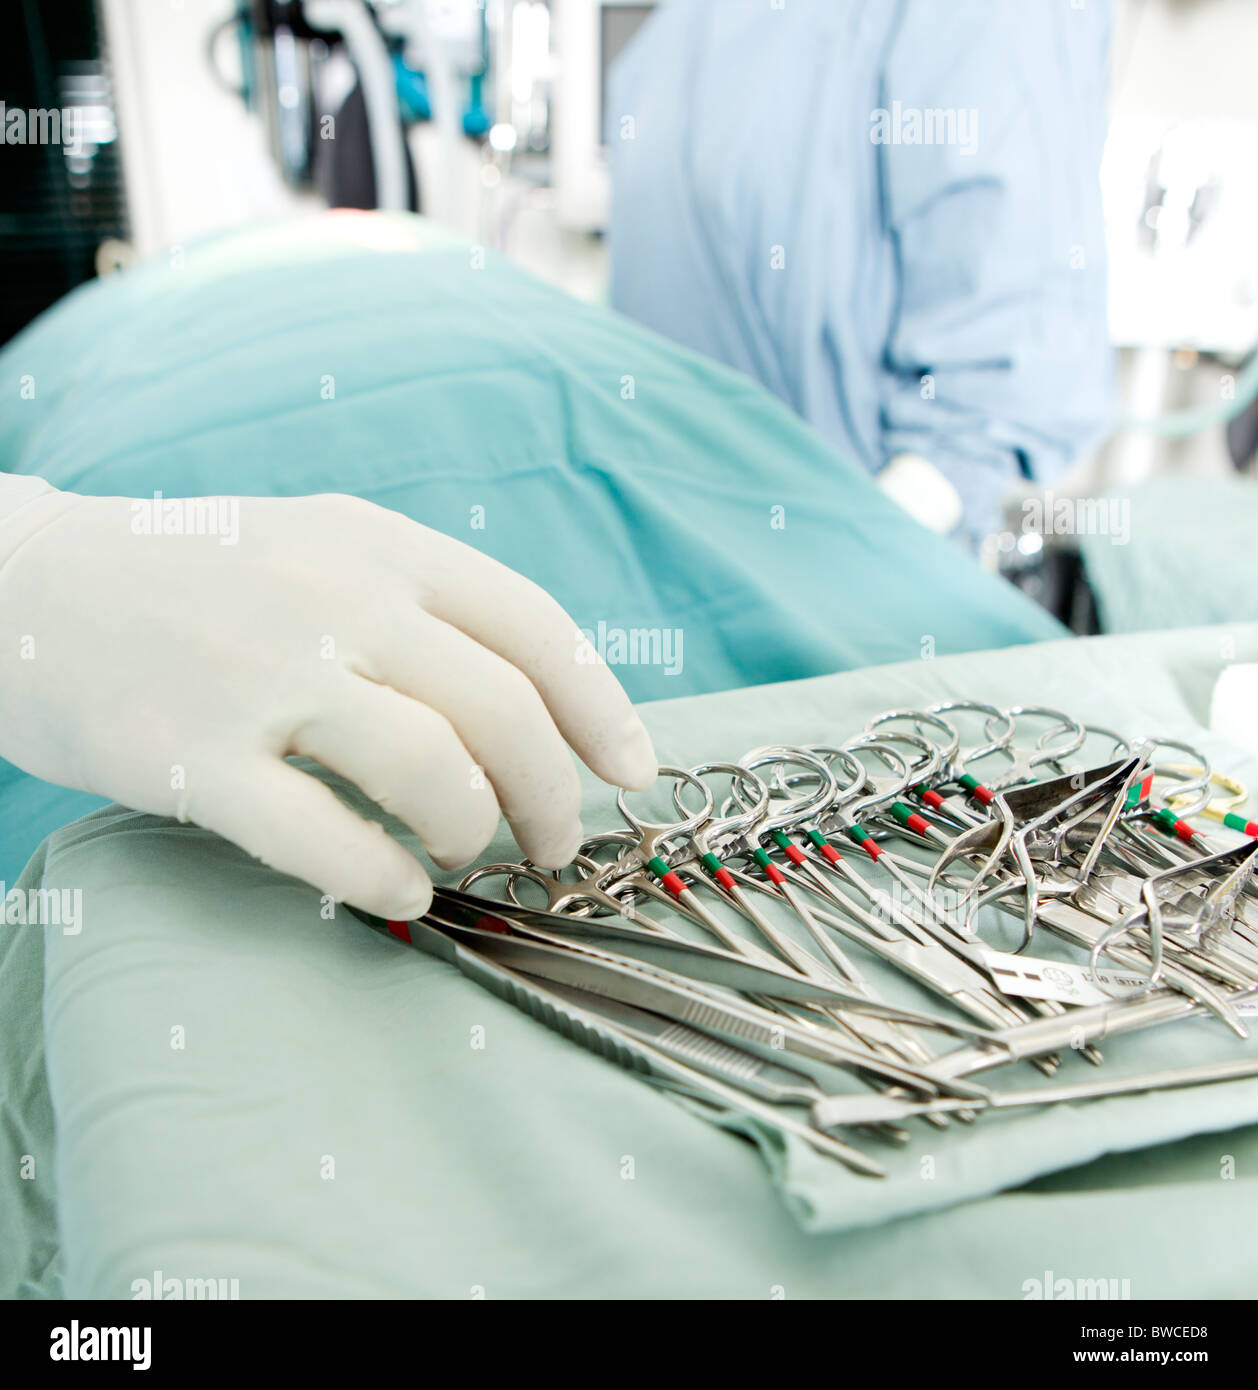 Dettaglio colpo di sterilizzare strumenti chirurgici con una mano afferrando un utensile Foto Stock